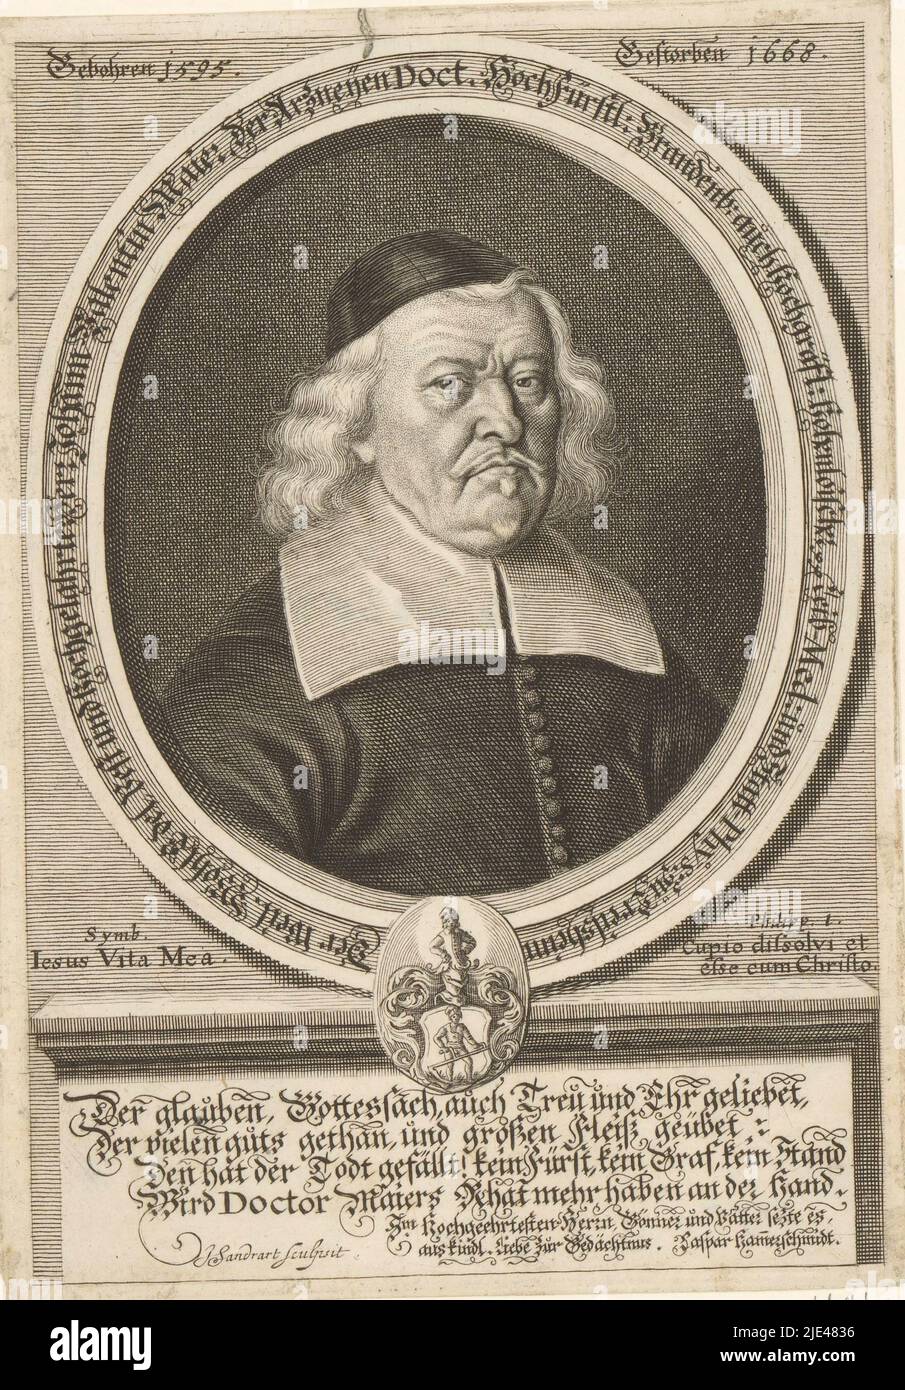 Portrait de Johann Valentin Maier, Jakob von Sandrat, 1668, imprimerie: Jakob von Sandrat, (mentionné sur l'objet), Caspar Hammerschmied, (mentionné sur l'objet), 1668, papier, gravure, h 197 mm - l 137 mm Banque D'Images